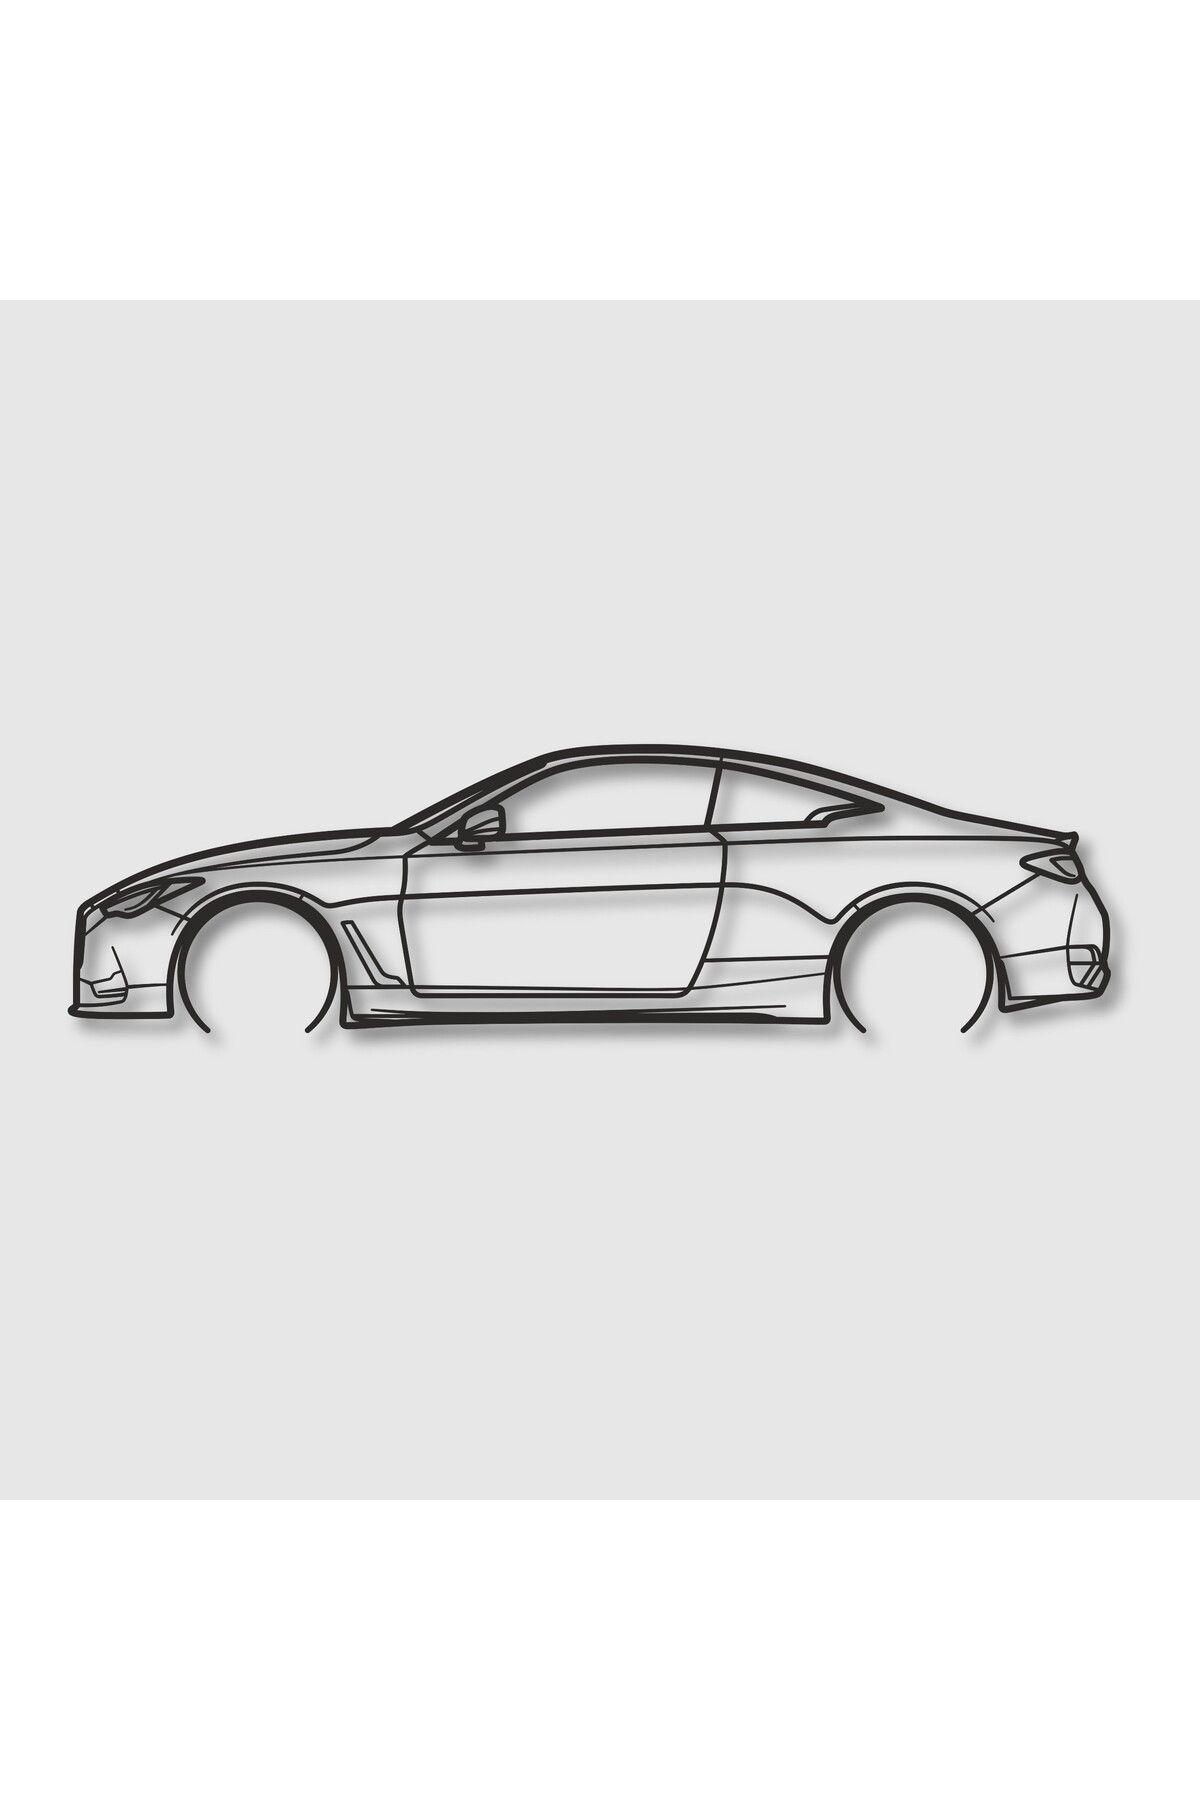 GARA CAR 2017 Infiniti Q60 MODEL Metal Araba Dekoru, Araba Modeli Tablo